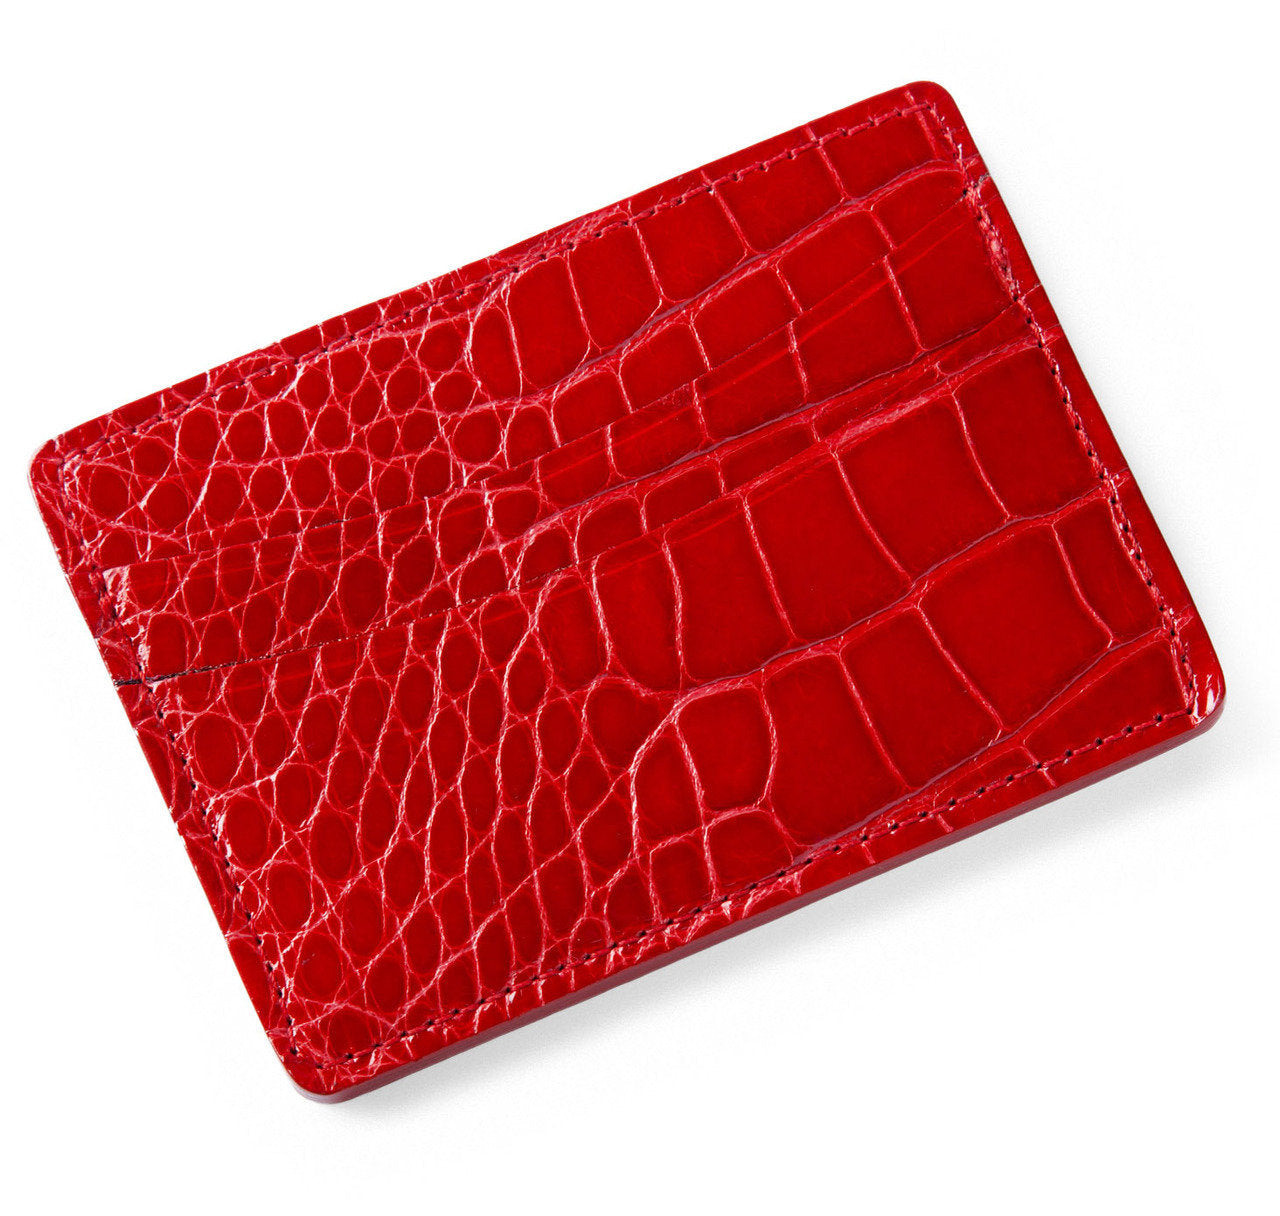 Glazed Red Alligator Card Holder